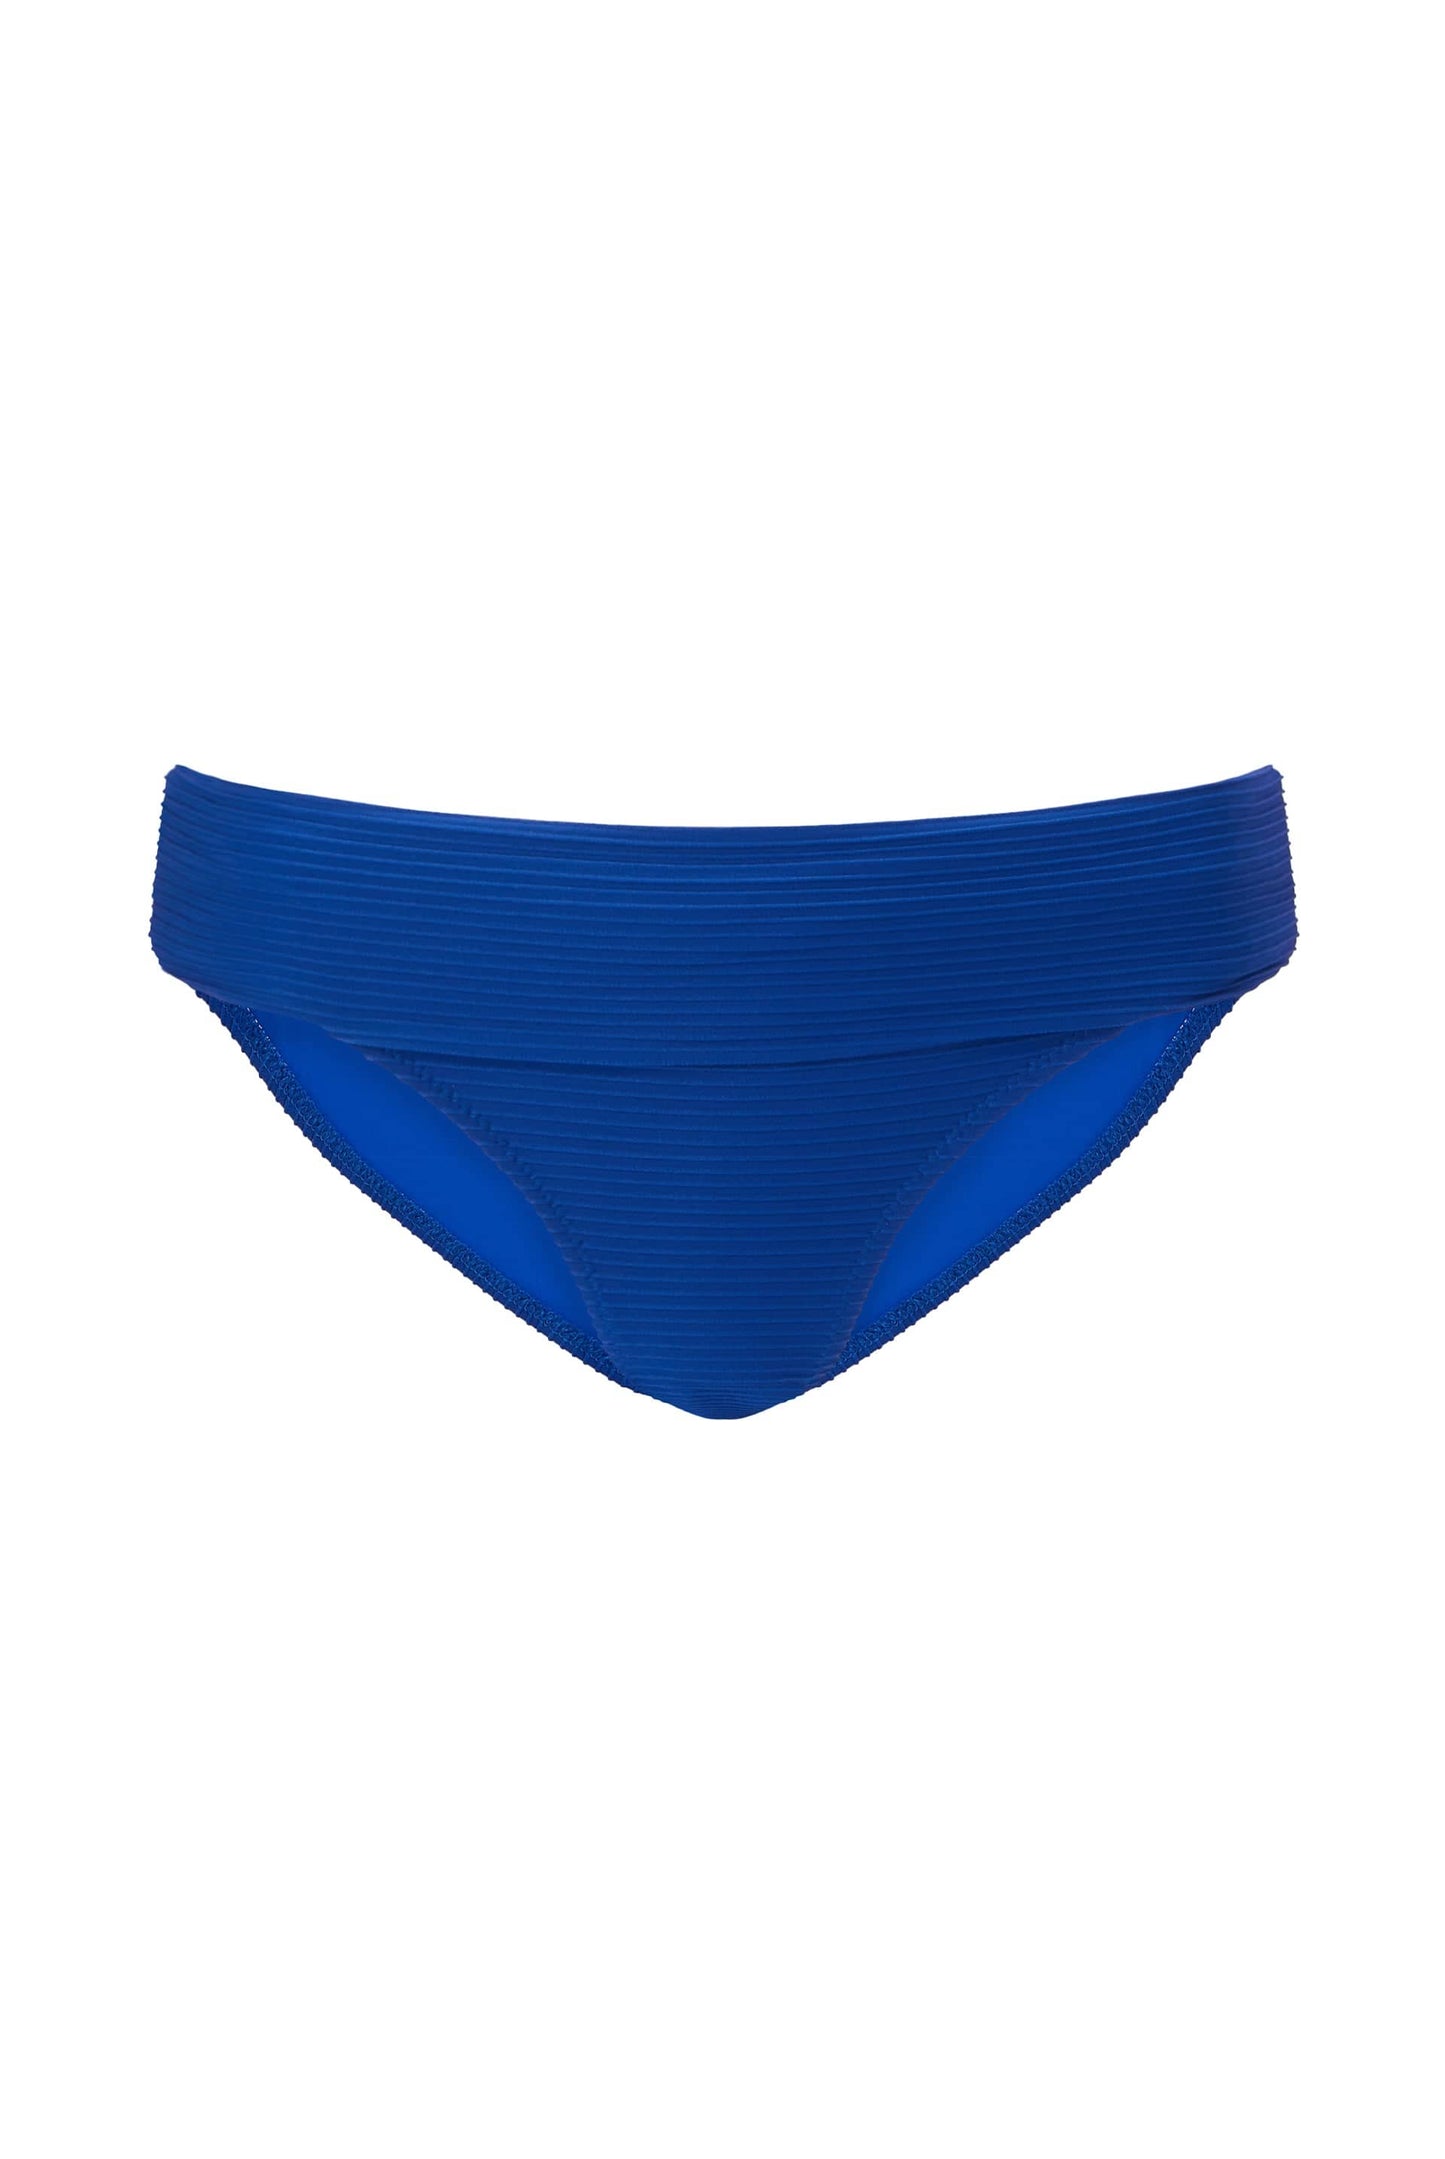 Maldivian Blue Fold Over Bikini Bottom